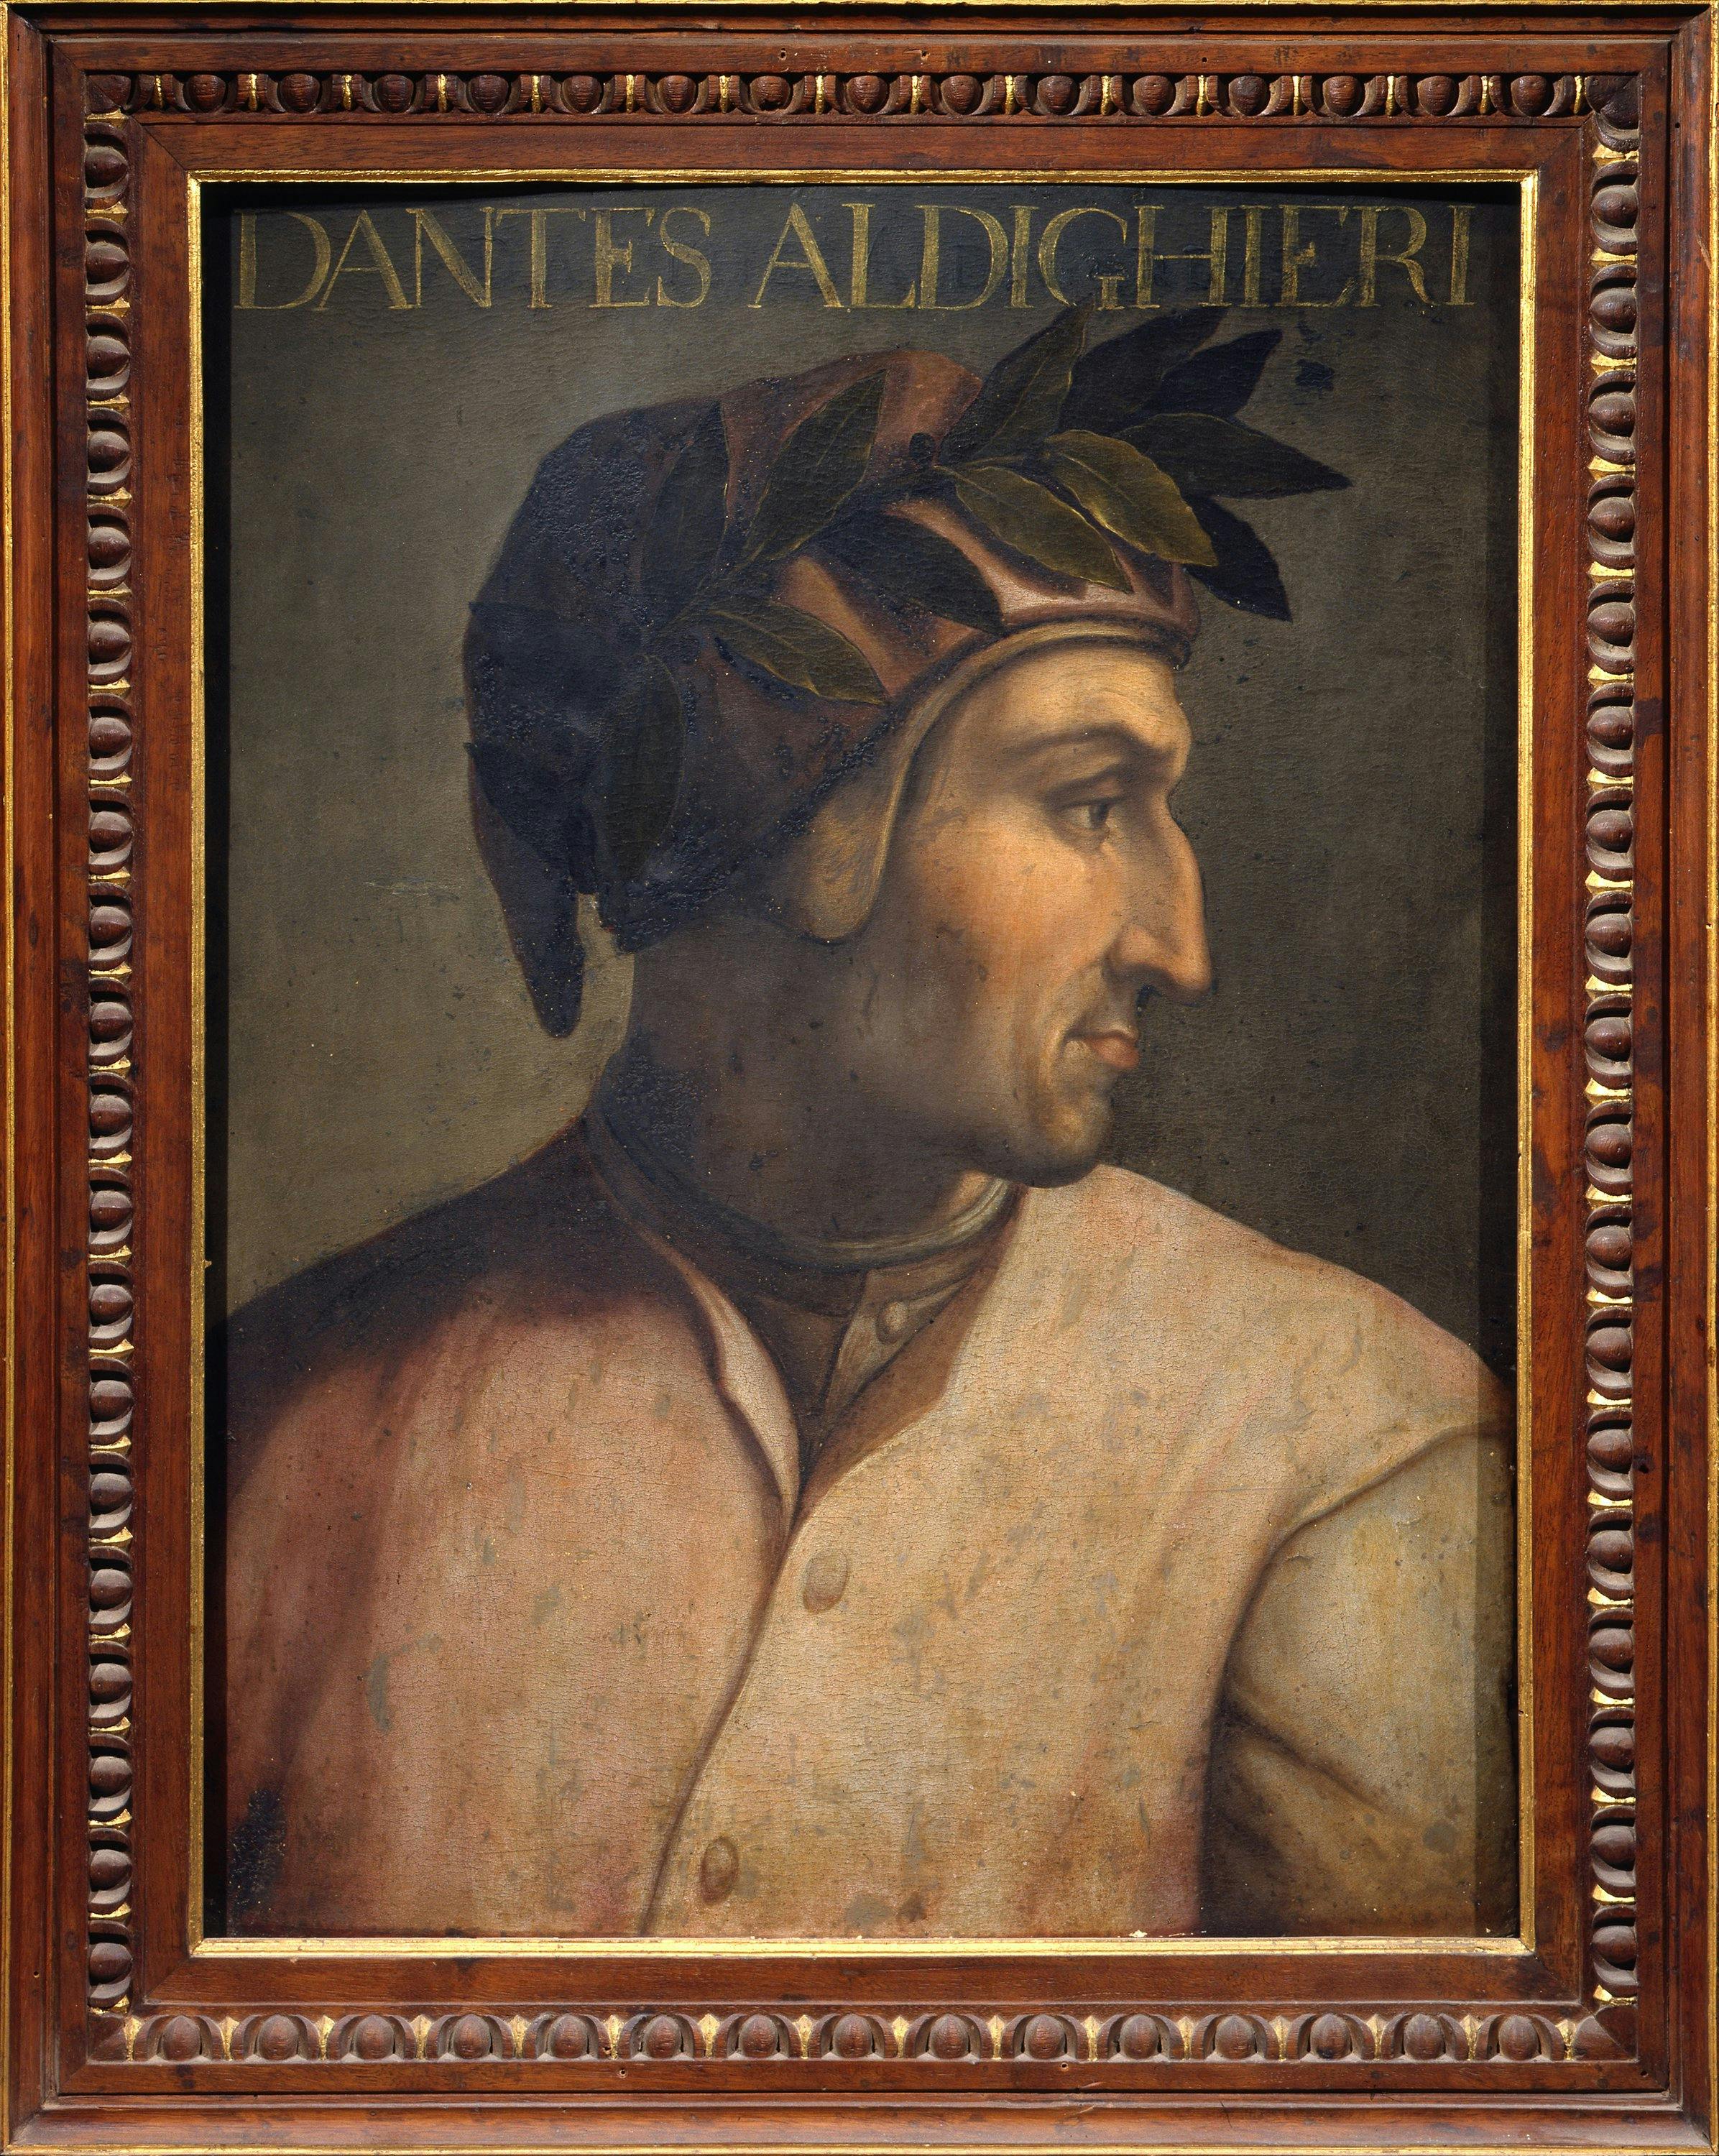 Forlì e gli Uffizi insieme per la grande mostra dedicata a Dante